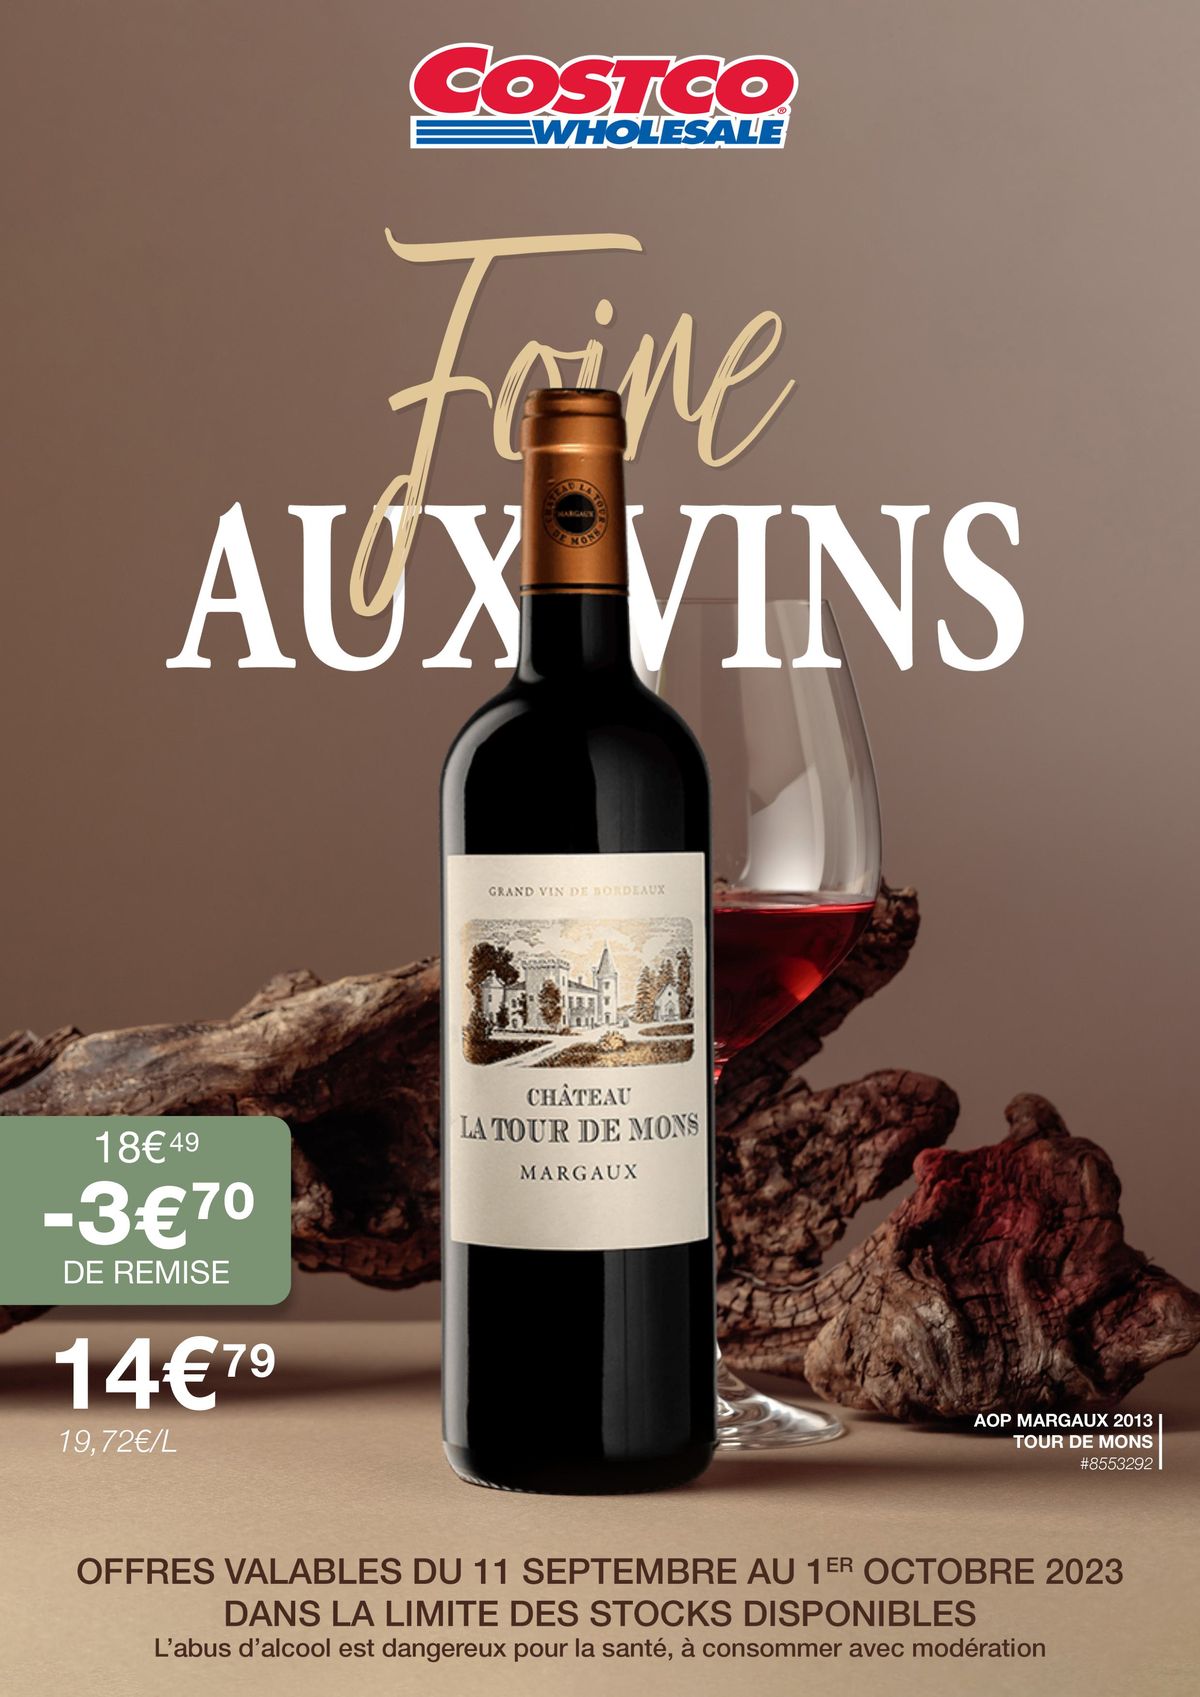 Catalogue Foire aux vins, page 00001